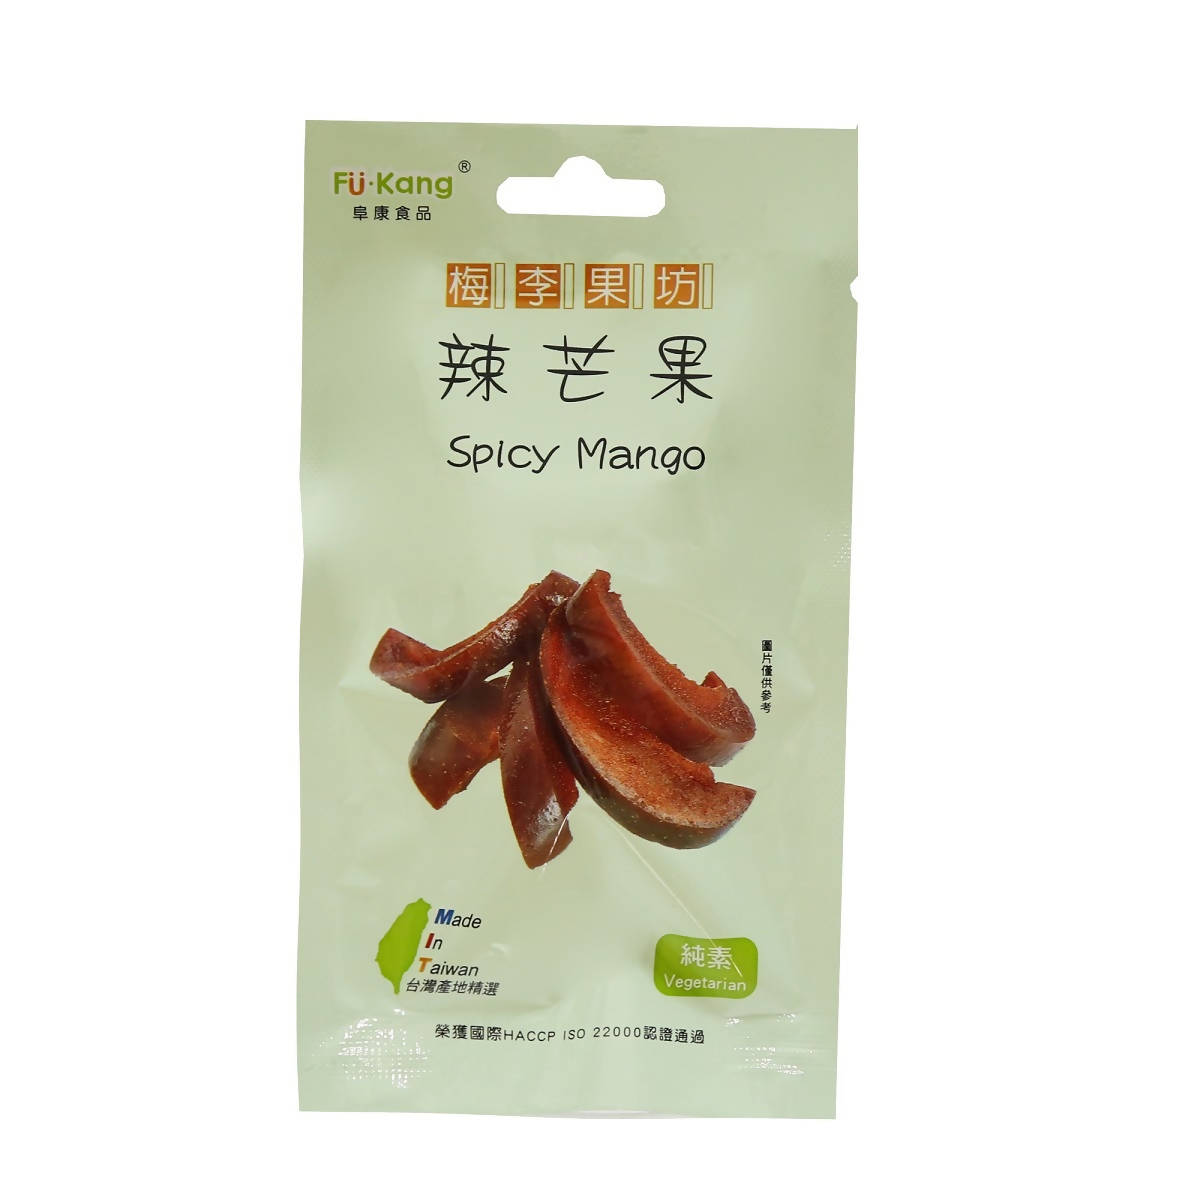 Taiwan direct mail【Mei Li Guofang】 FUKANG Spicy Mango 60g 